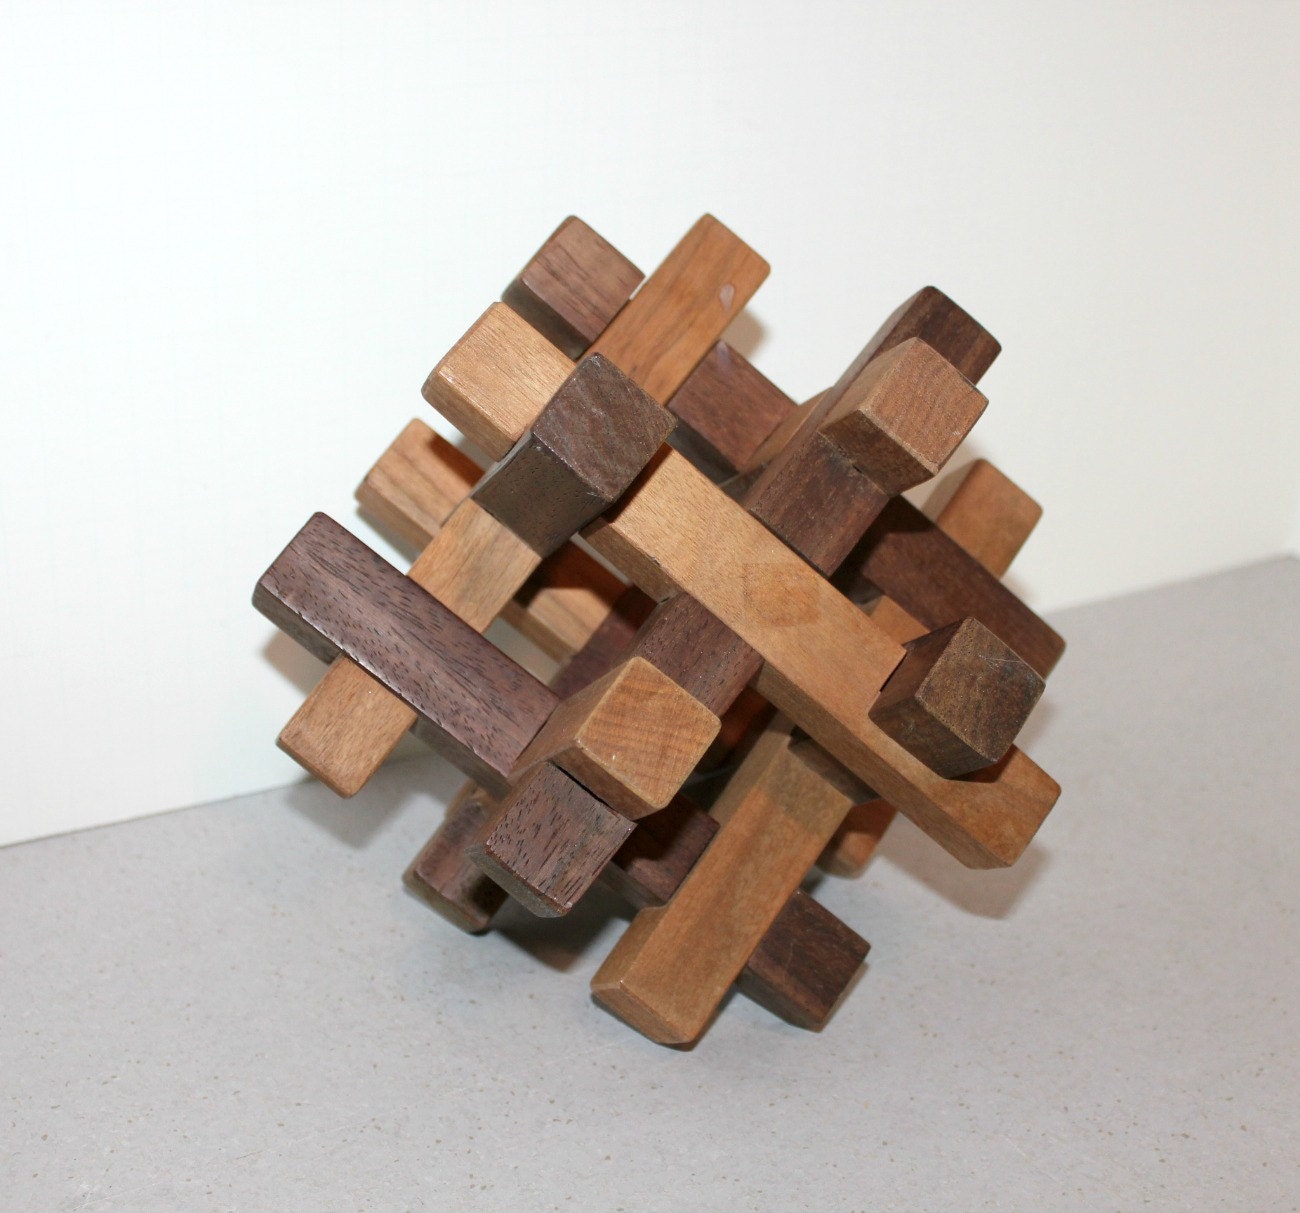 classic wood block puzzle